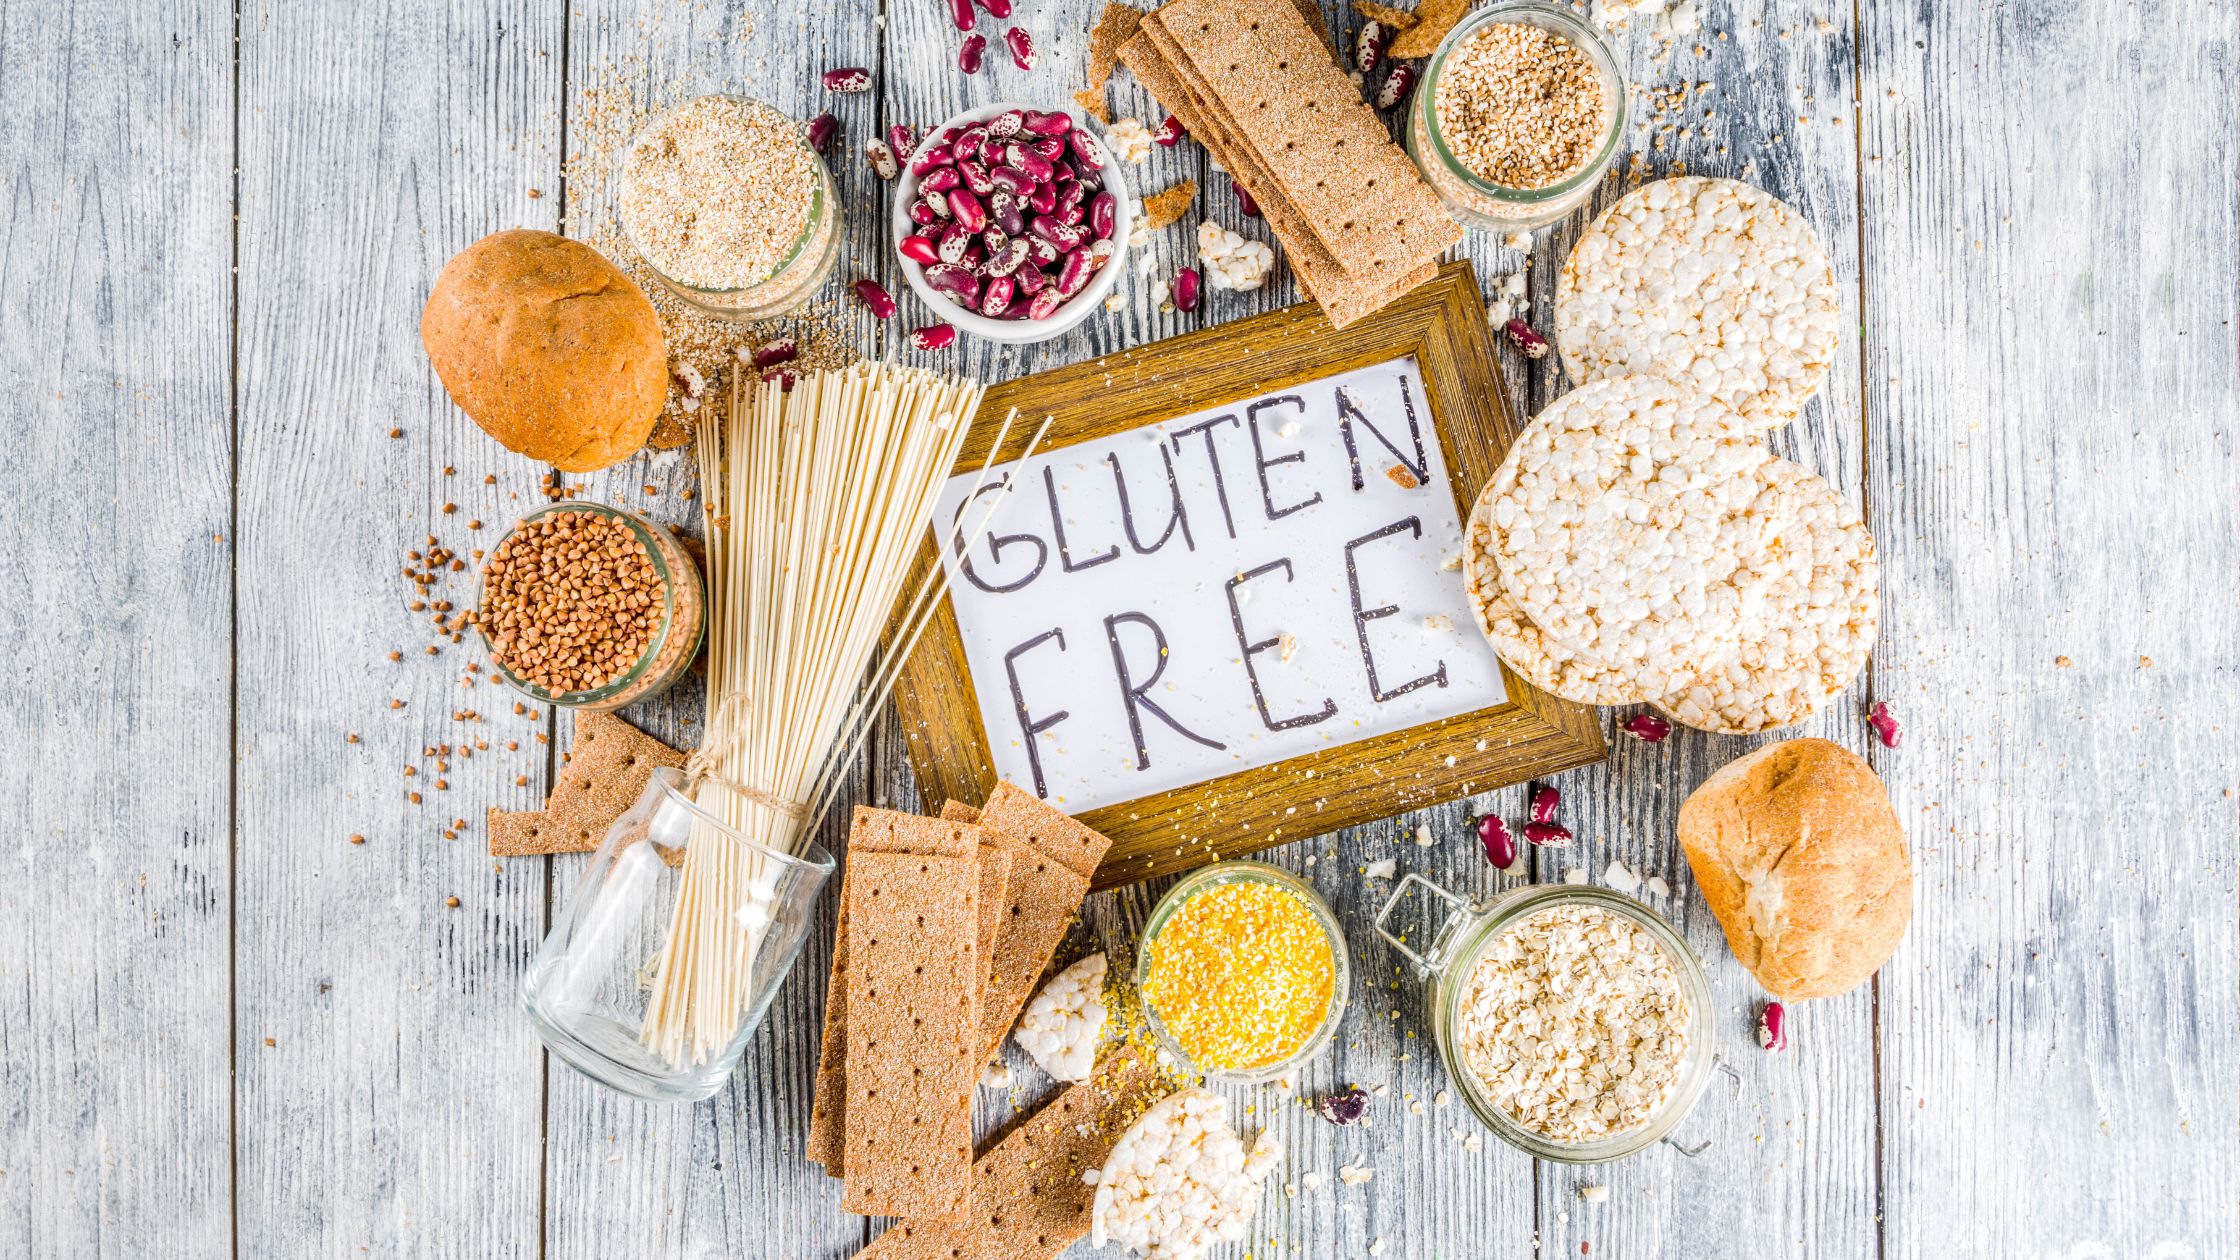 Gluten-Free Certification